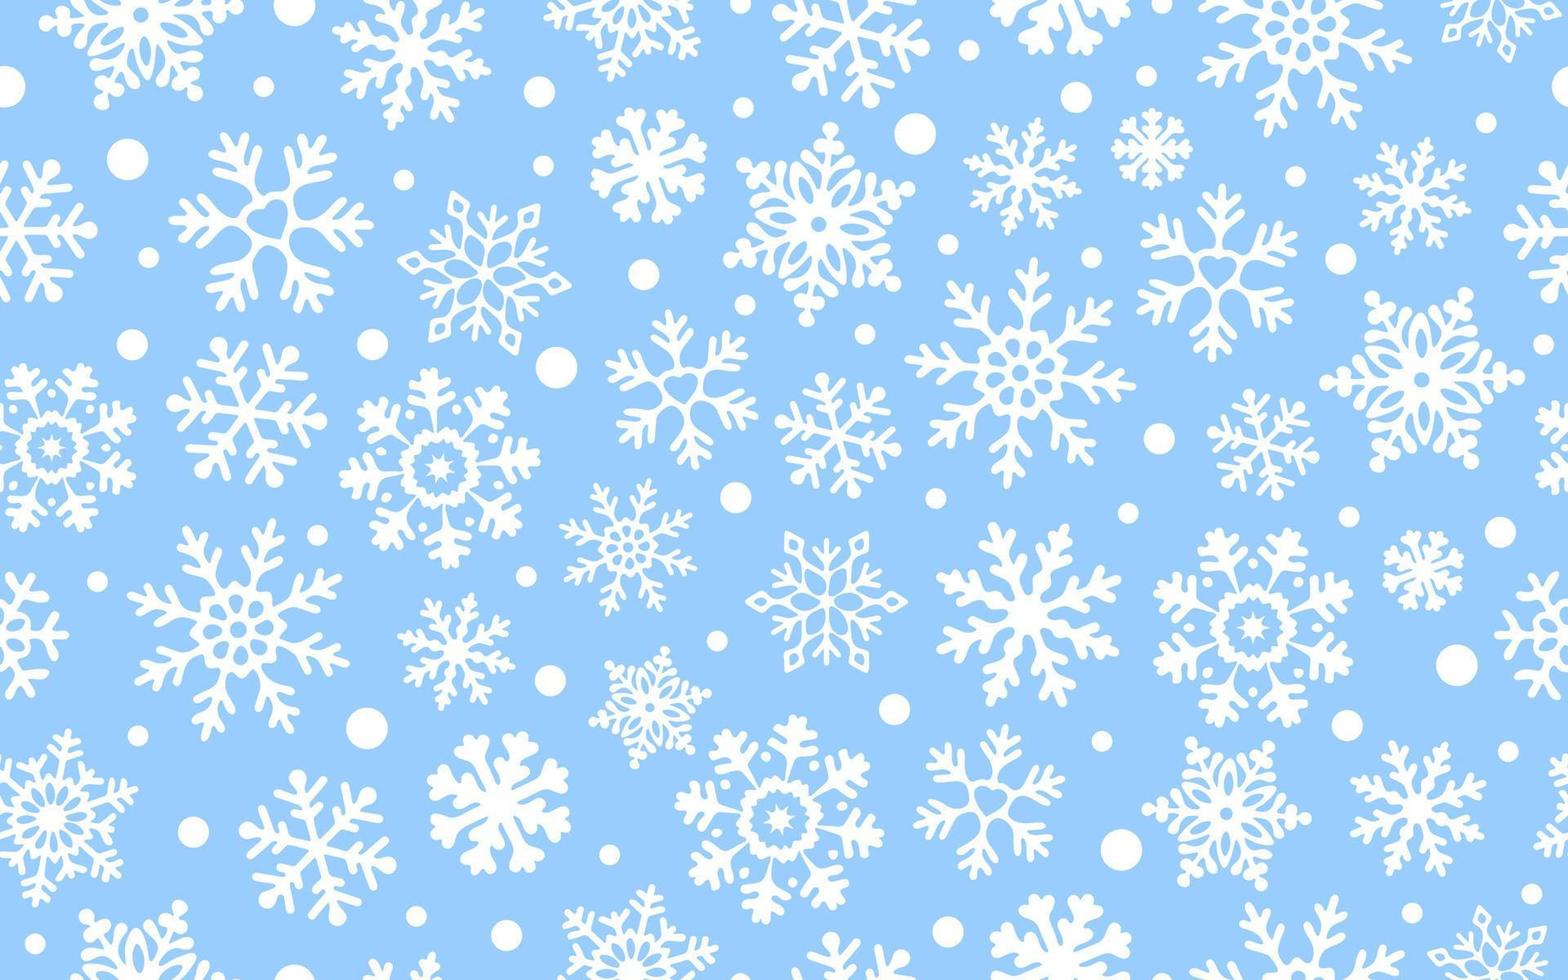 vita snöflingor på blå bakgrund, vektor seamless mönster. fallande snöflingor på blå bakgrund. begreppet vintersemester.